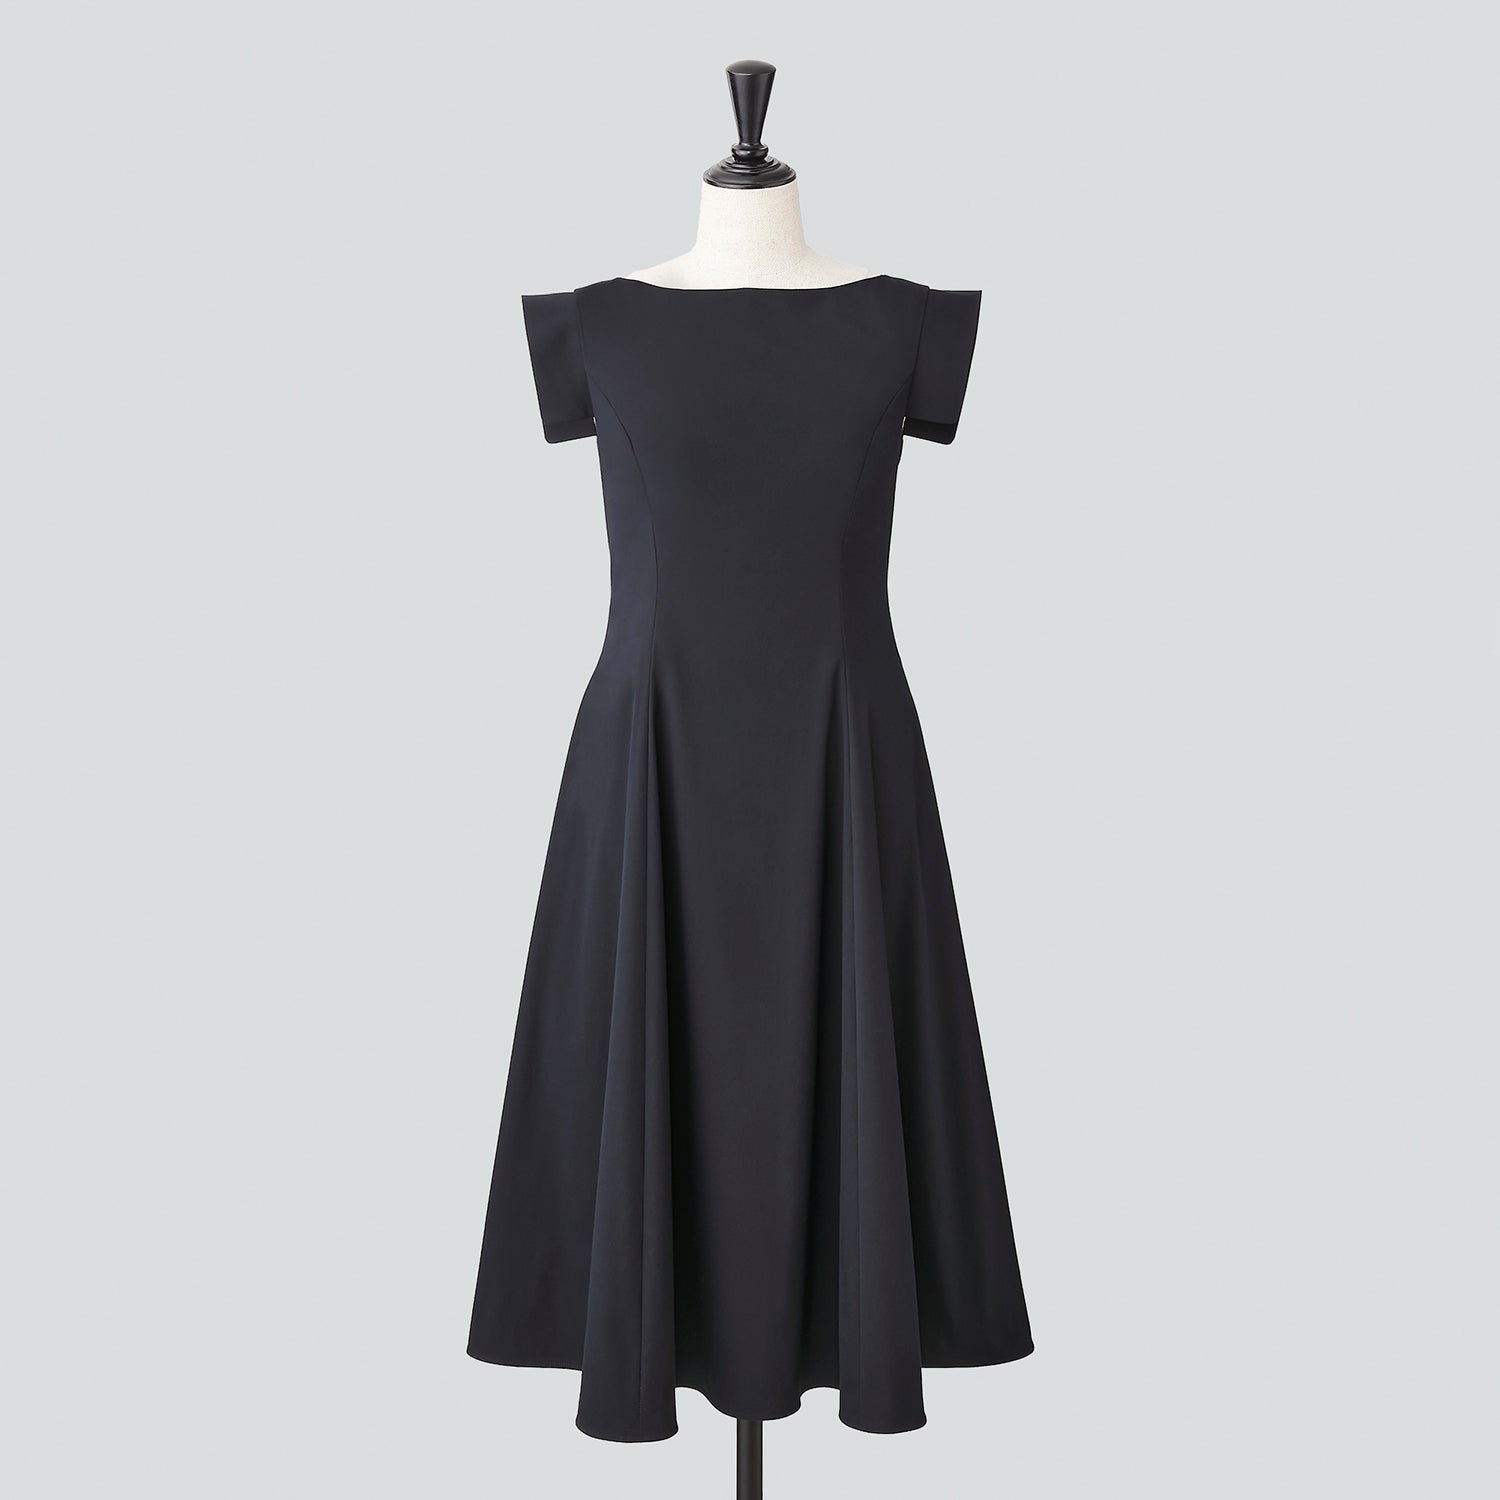 価格118800円FOXEY Dress Noble Gray